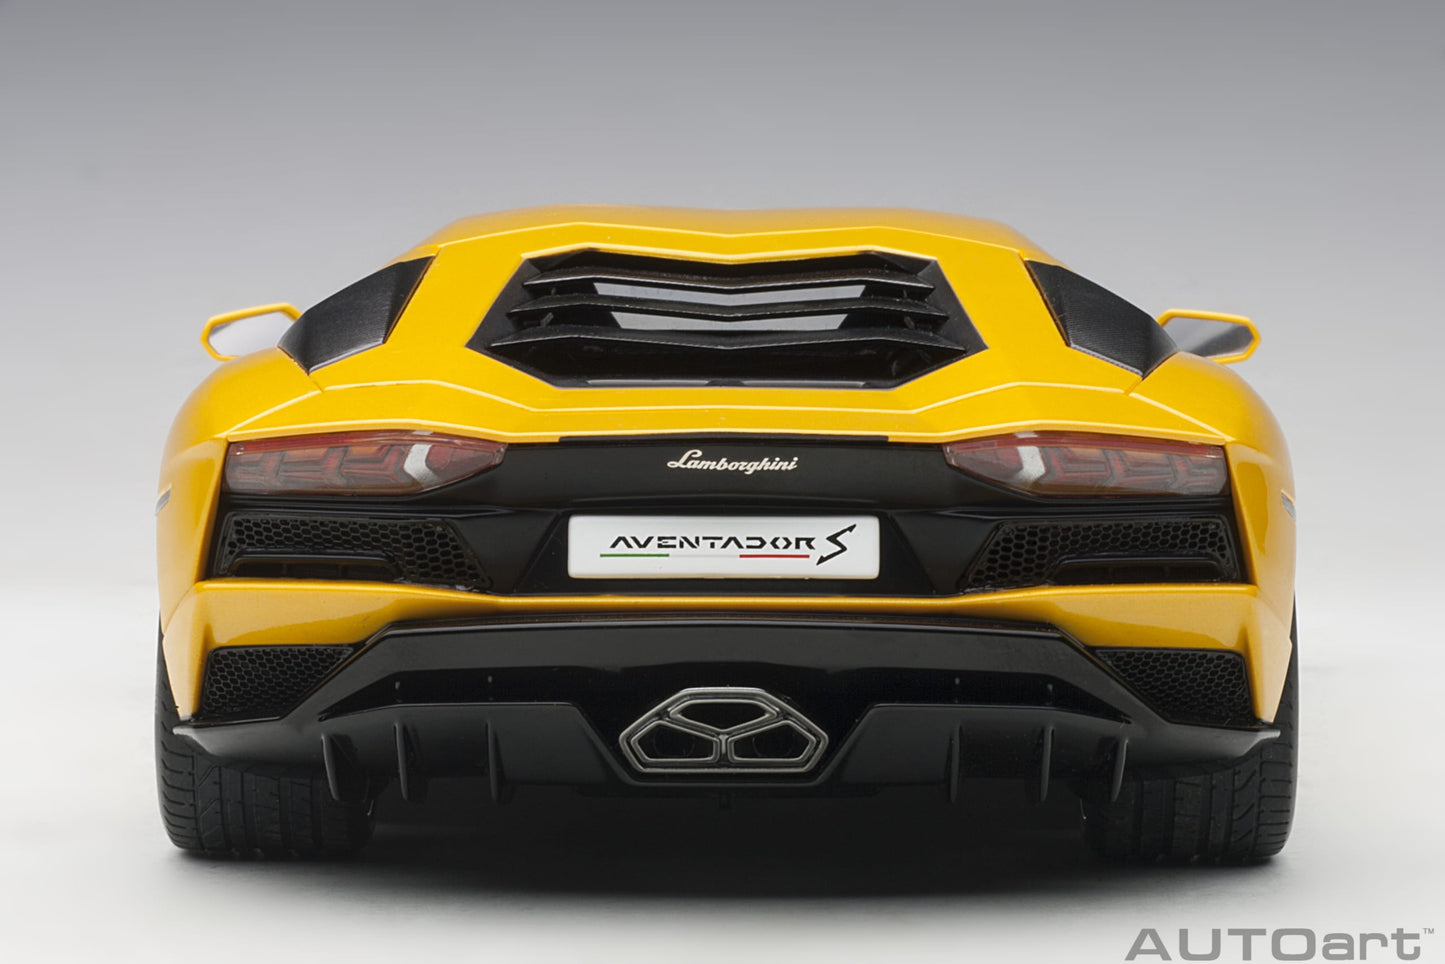 AUTOart 1:18 Lamborghini Aventador S (Yellow Orion) 79132